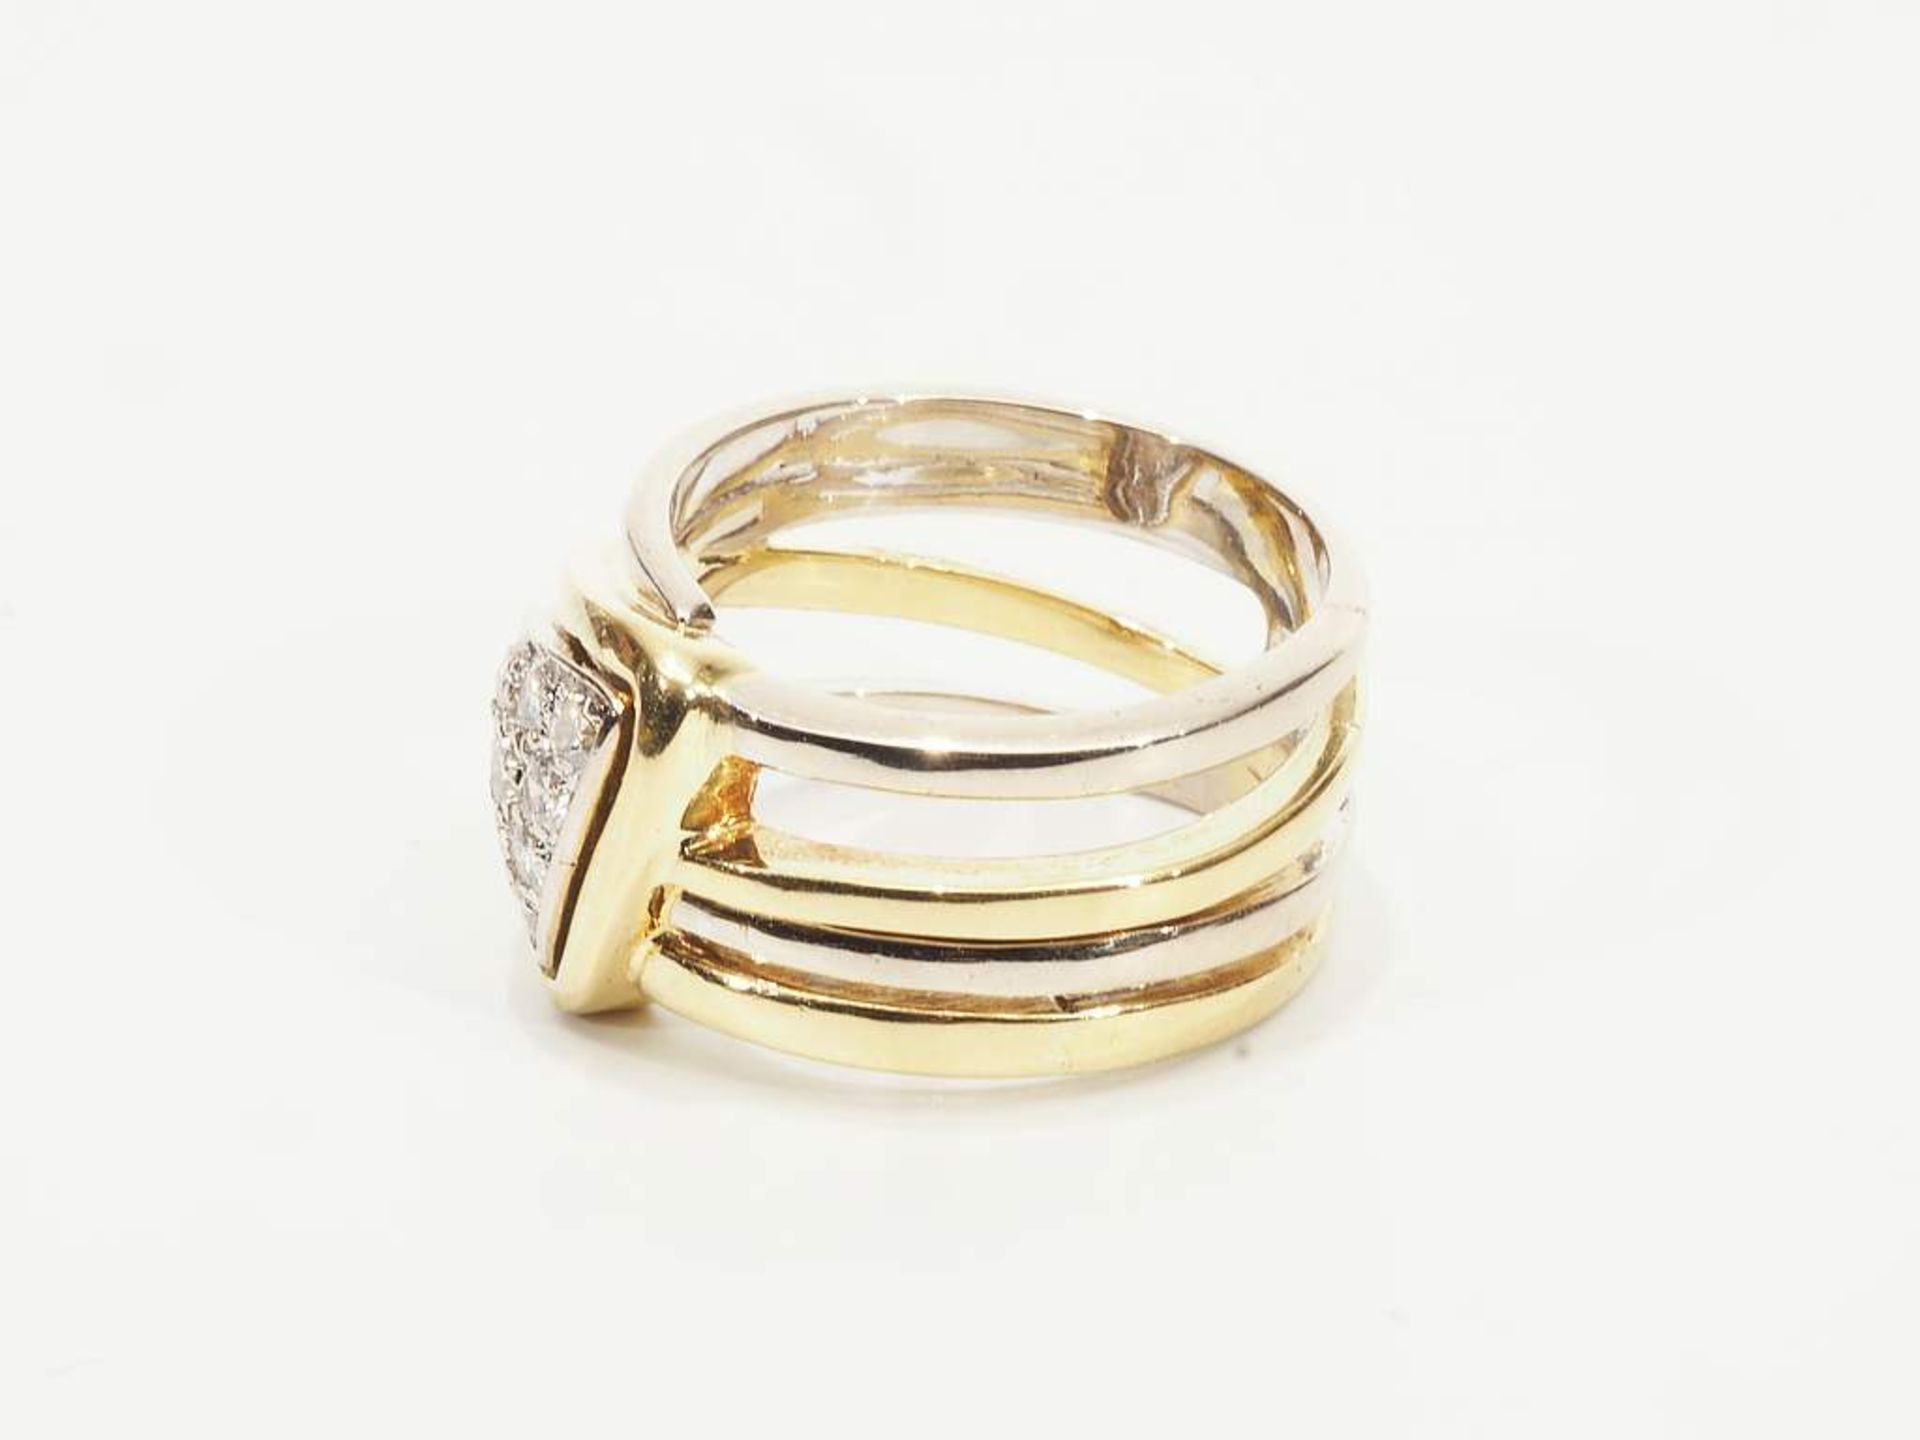 Ring mit Brillanten. 750er Gelb- und Weißgold, eingesetztes dreieckiges Mittelteil mit zehn Brilla - Image 4 of 6